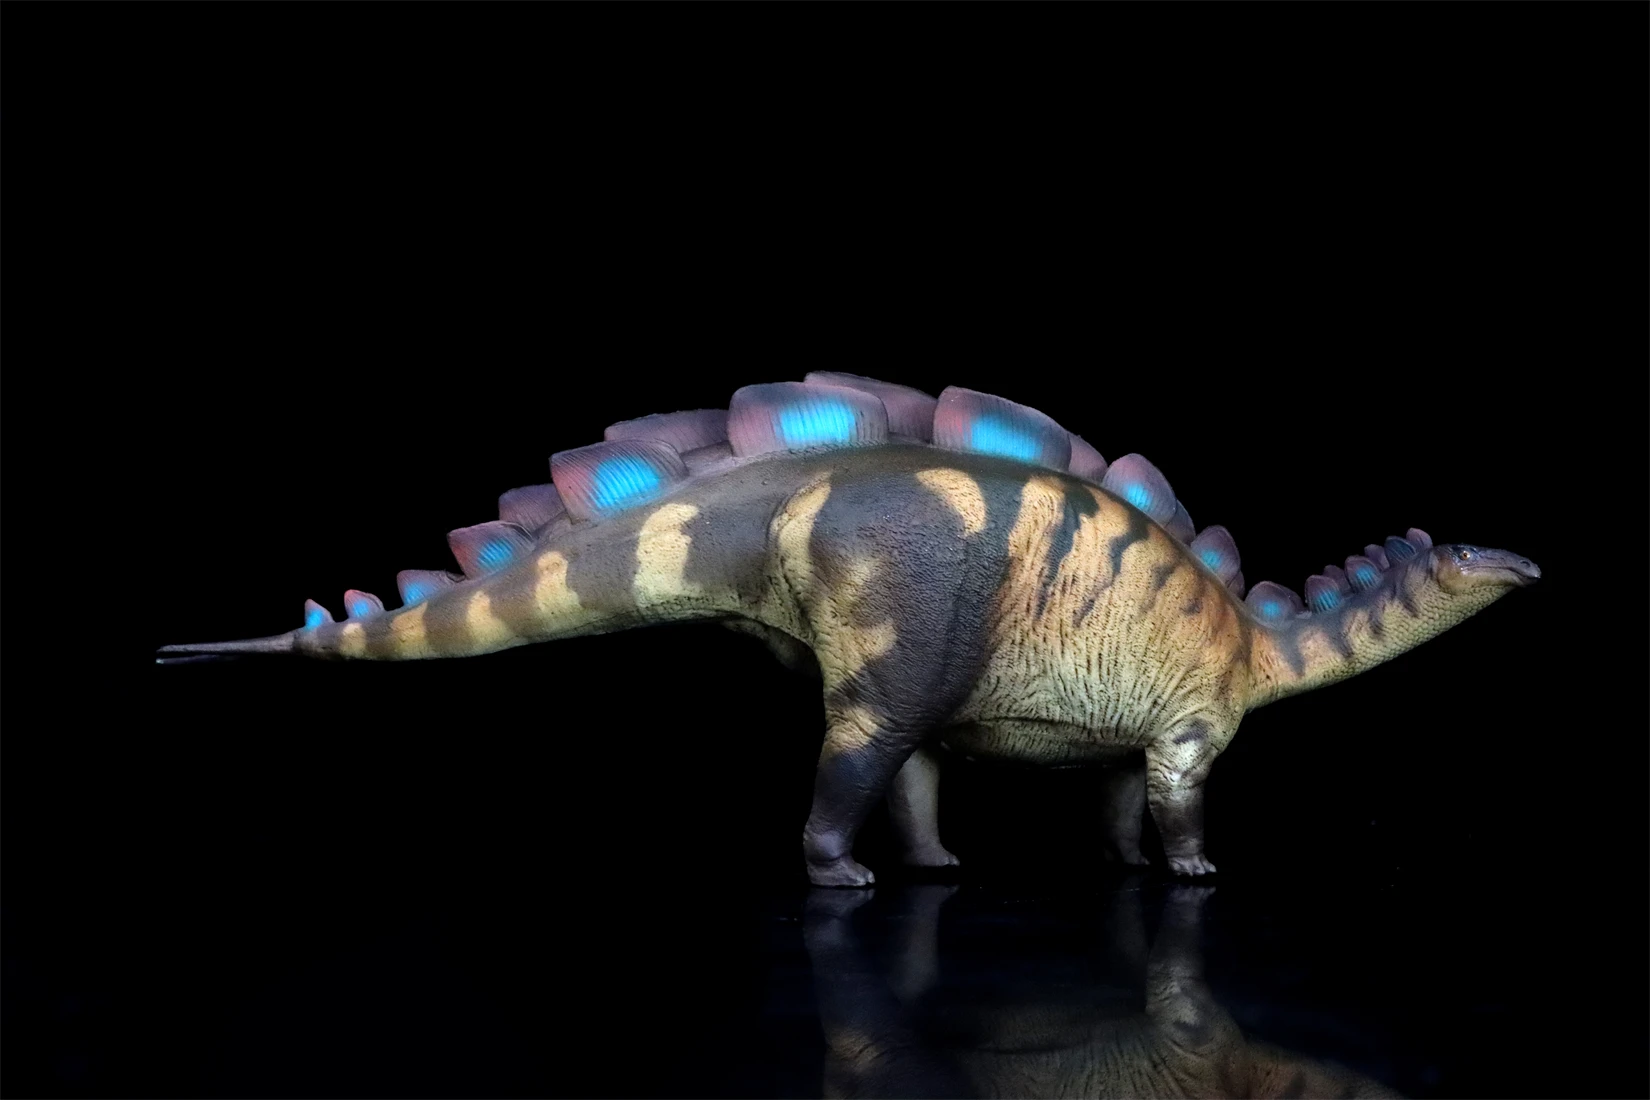 PNSO 82 Wuerhosaurus Xilin modelo Stegosauridae dinosaurio escena Animal prehistórica decoración regalo colección estatua científica